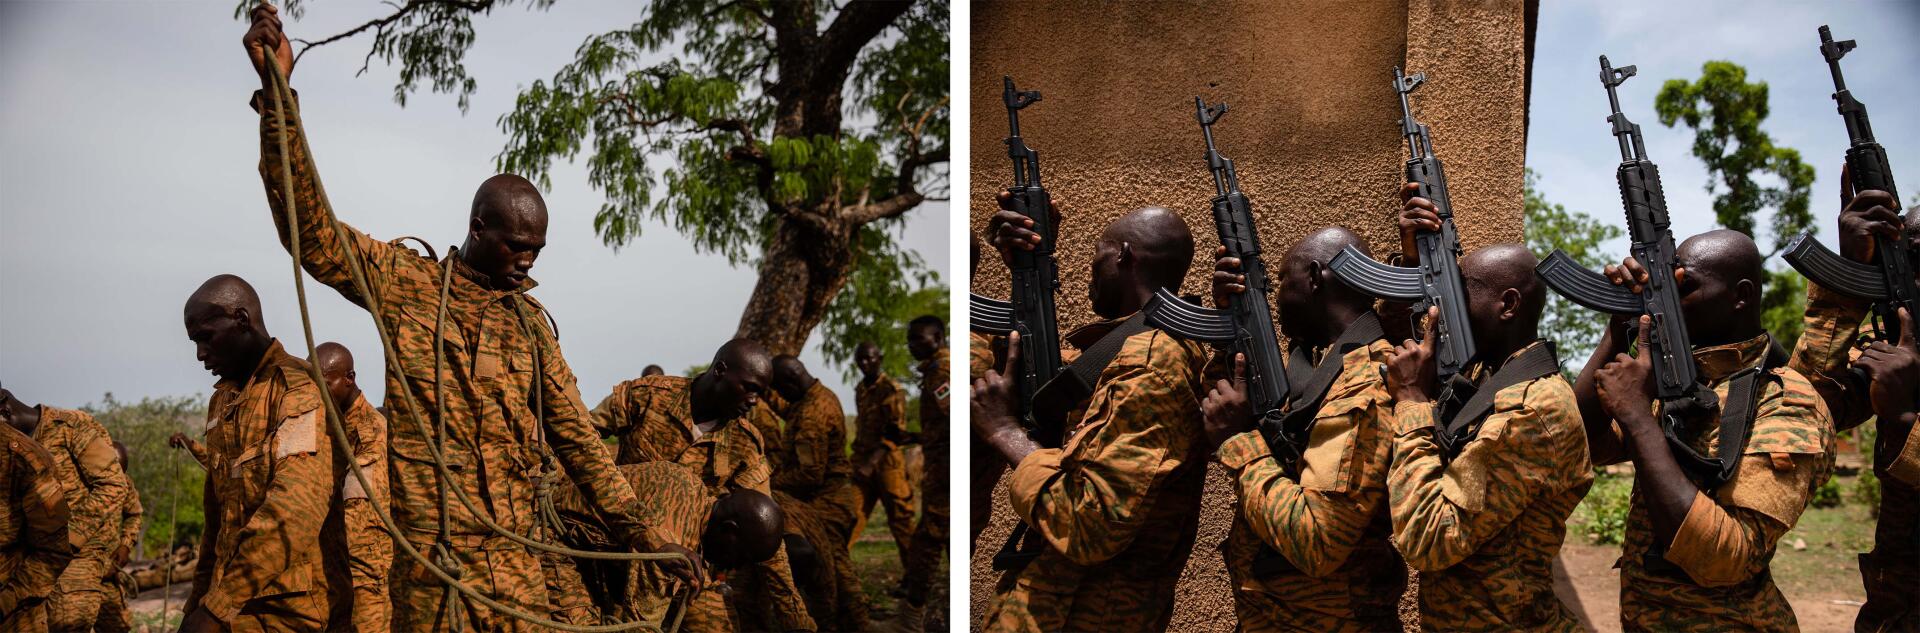 Au Centre d’entraînement commando et de formation aux opérations spéciales (CEC-FOS) de Pô au Burkina Faso, le 1er juin 2021, des soldats se préparent pour des parcours suspendus en milieu naturel (à gauche) et effectuent des exercices techniques de combat (à droite).